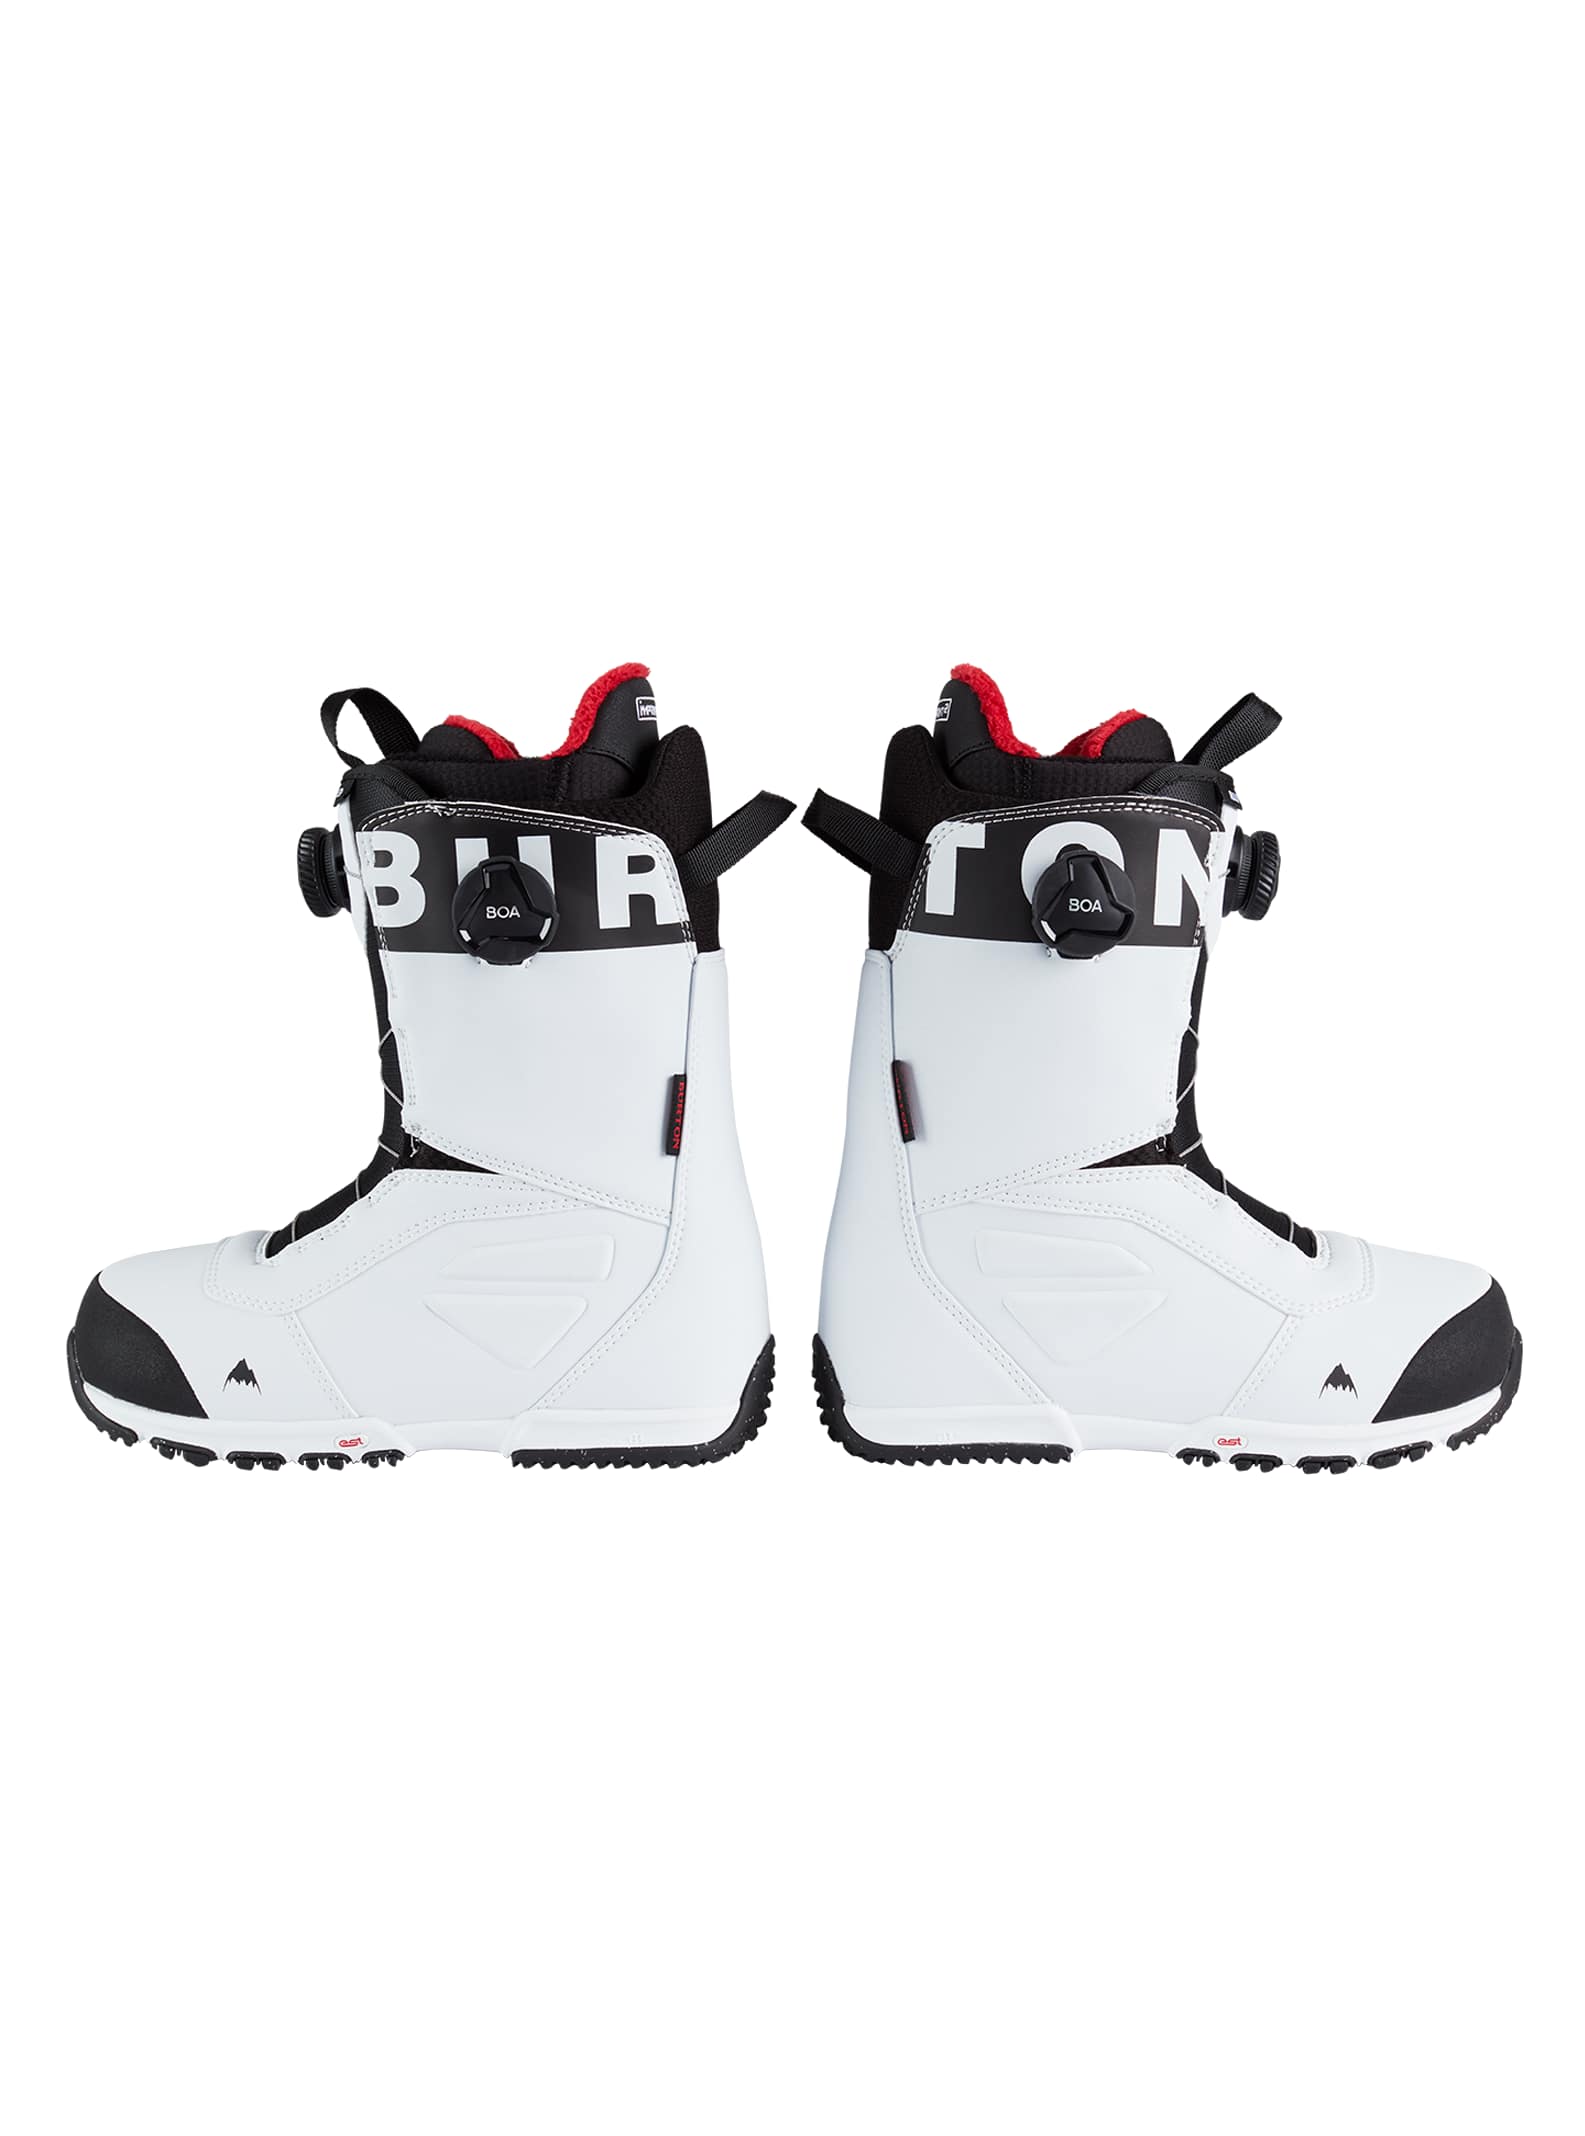 Burton Ruler Boa Snow Boots 2020 Mens in White Black 